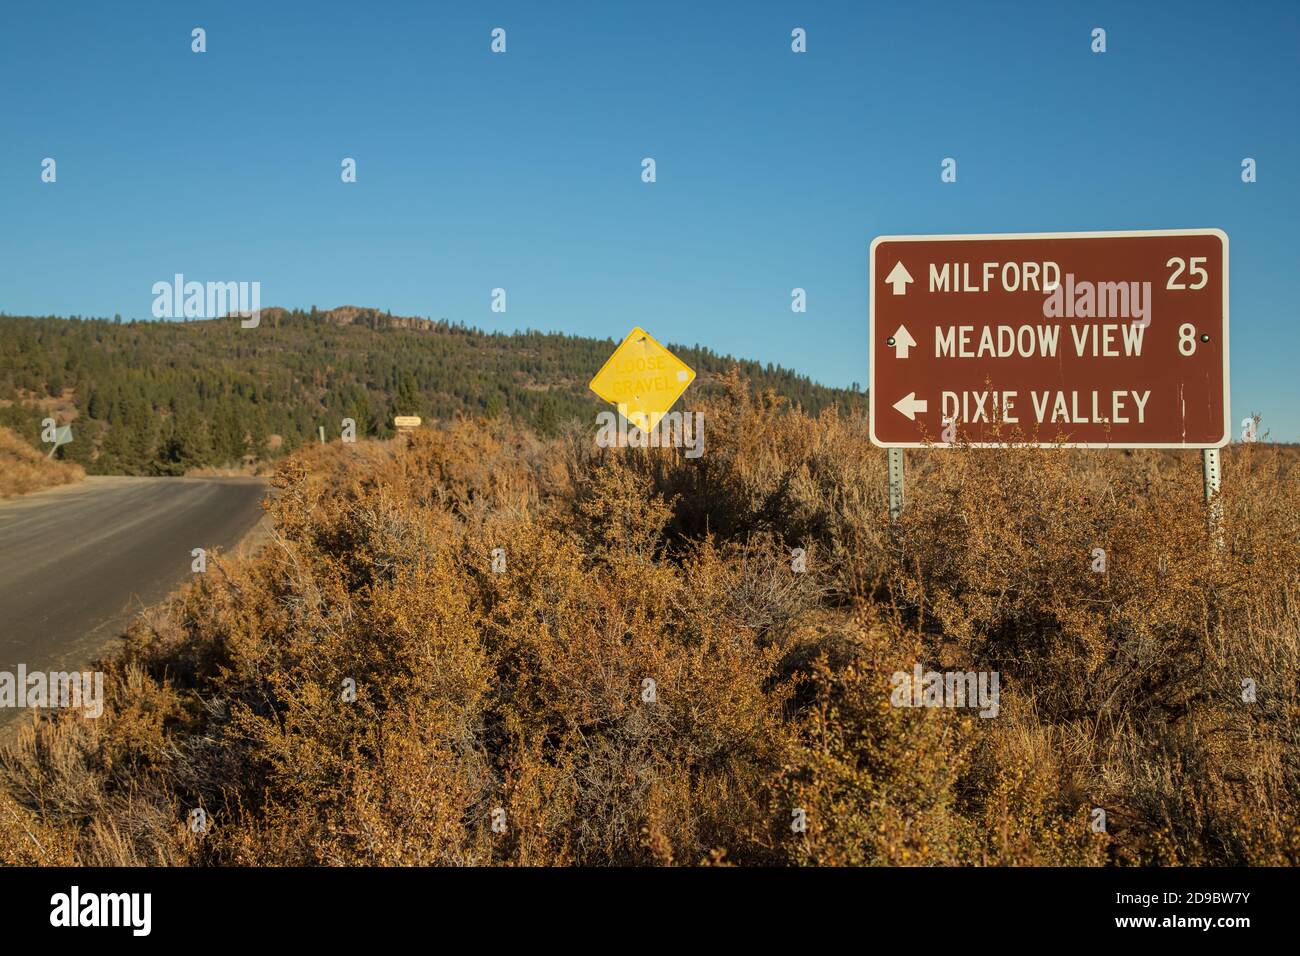 United States Forest Service Verzeichnis Zeichen auf einer abgelegenen Straße in Plumas County, Kalifornien. Zeigt die Entfernungen zu entlegenen, landschaftlich reizvollen Zielen innerhalb der n Stockfoto